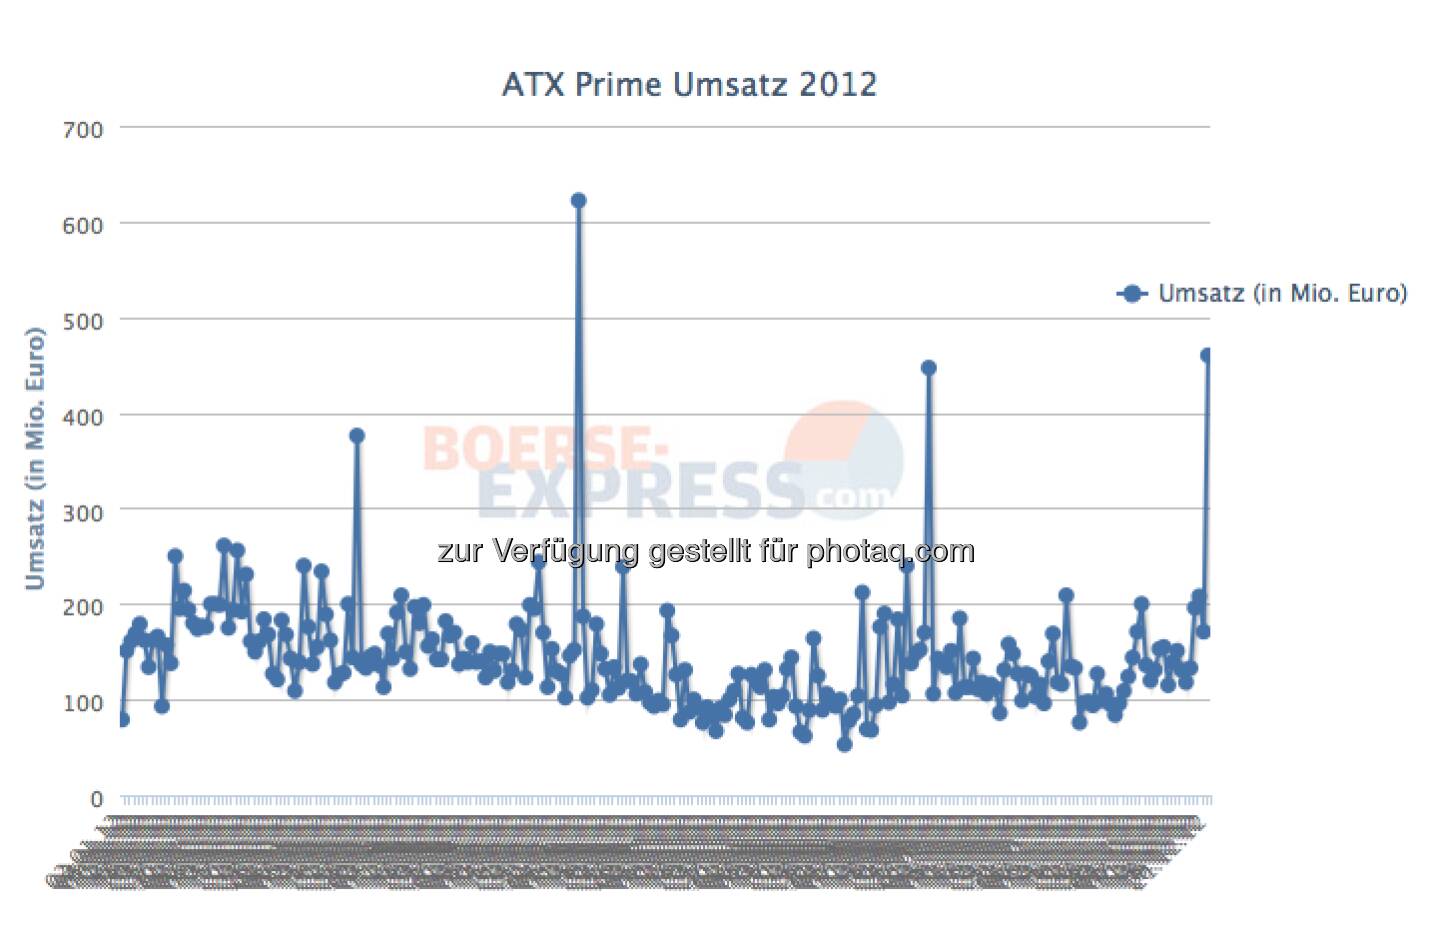 Wiener Börse: 460 Mio. ATX-Prime Umsatz am 21.12. (Dezember-Verfall). Der zweithöchste Tagesumsatz 2012 (c) Wiener Börse / BE / Drastil